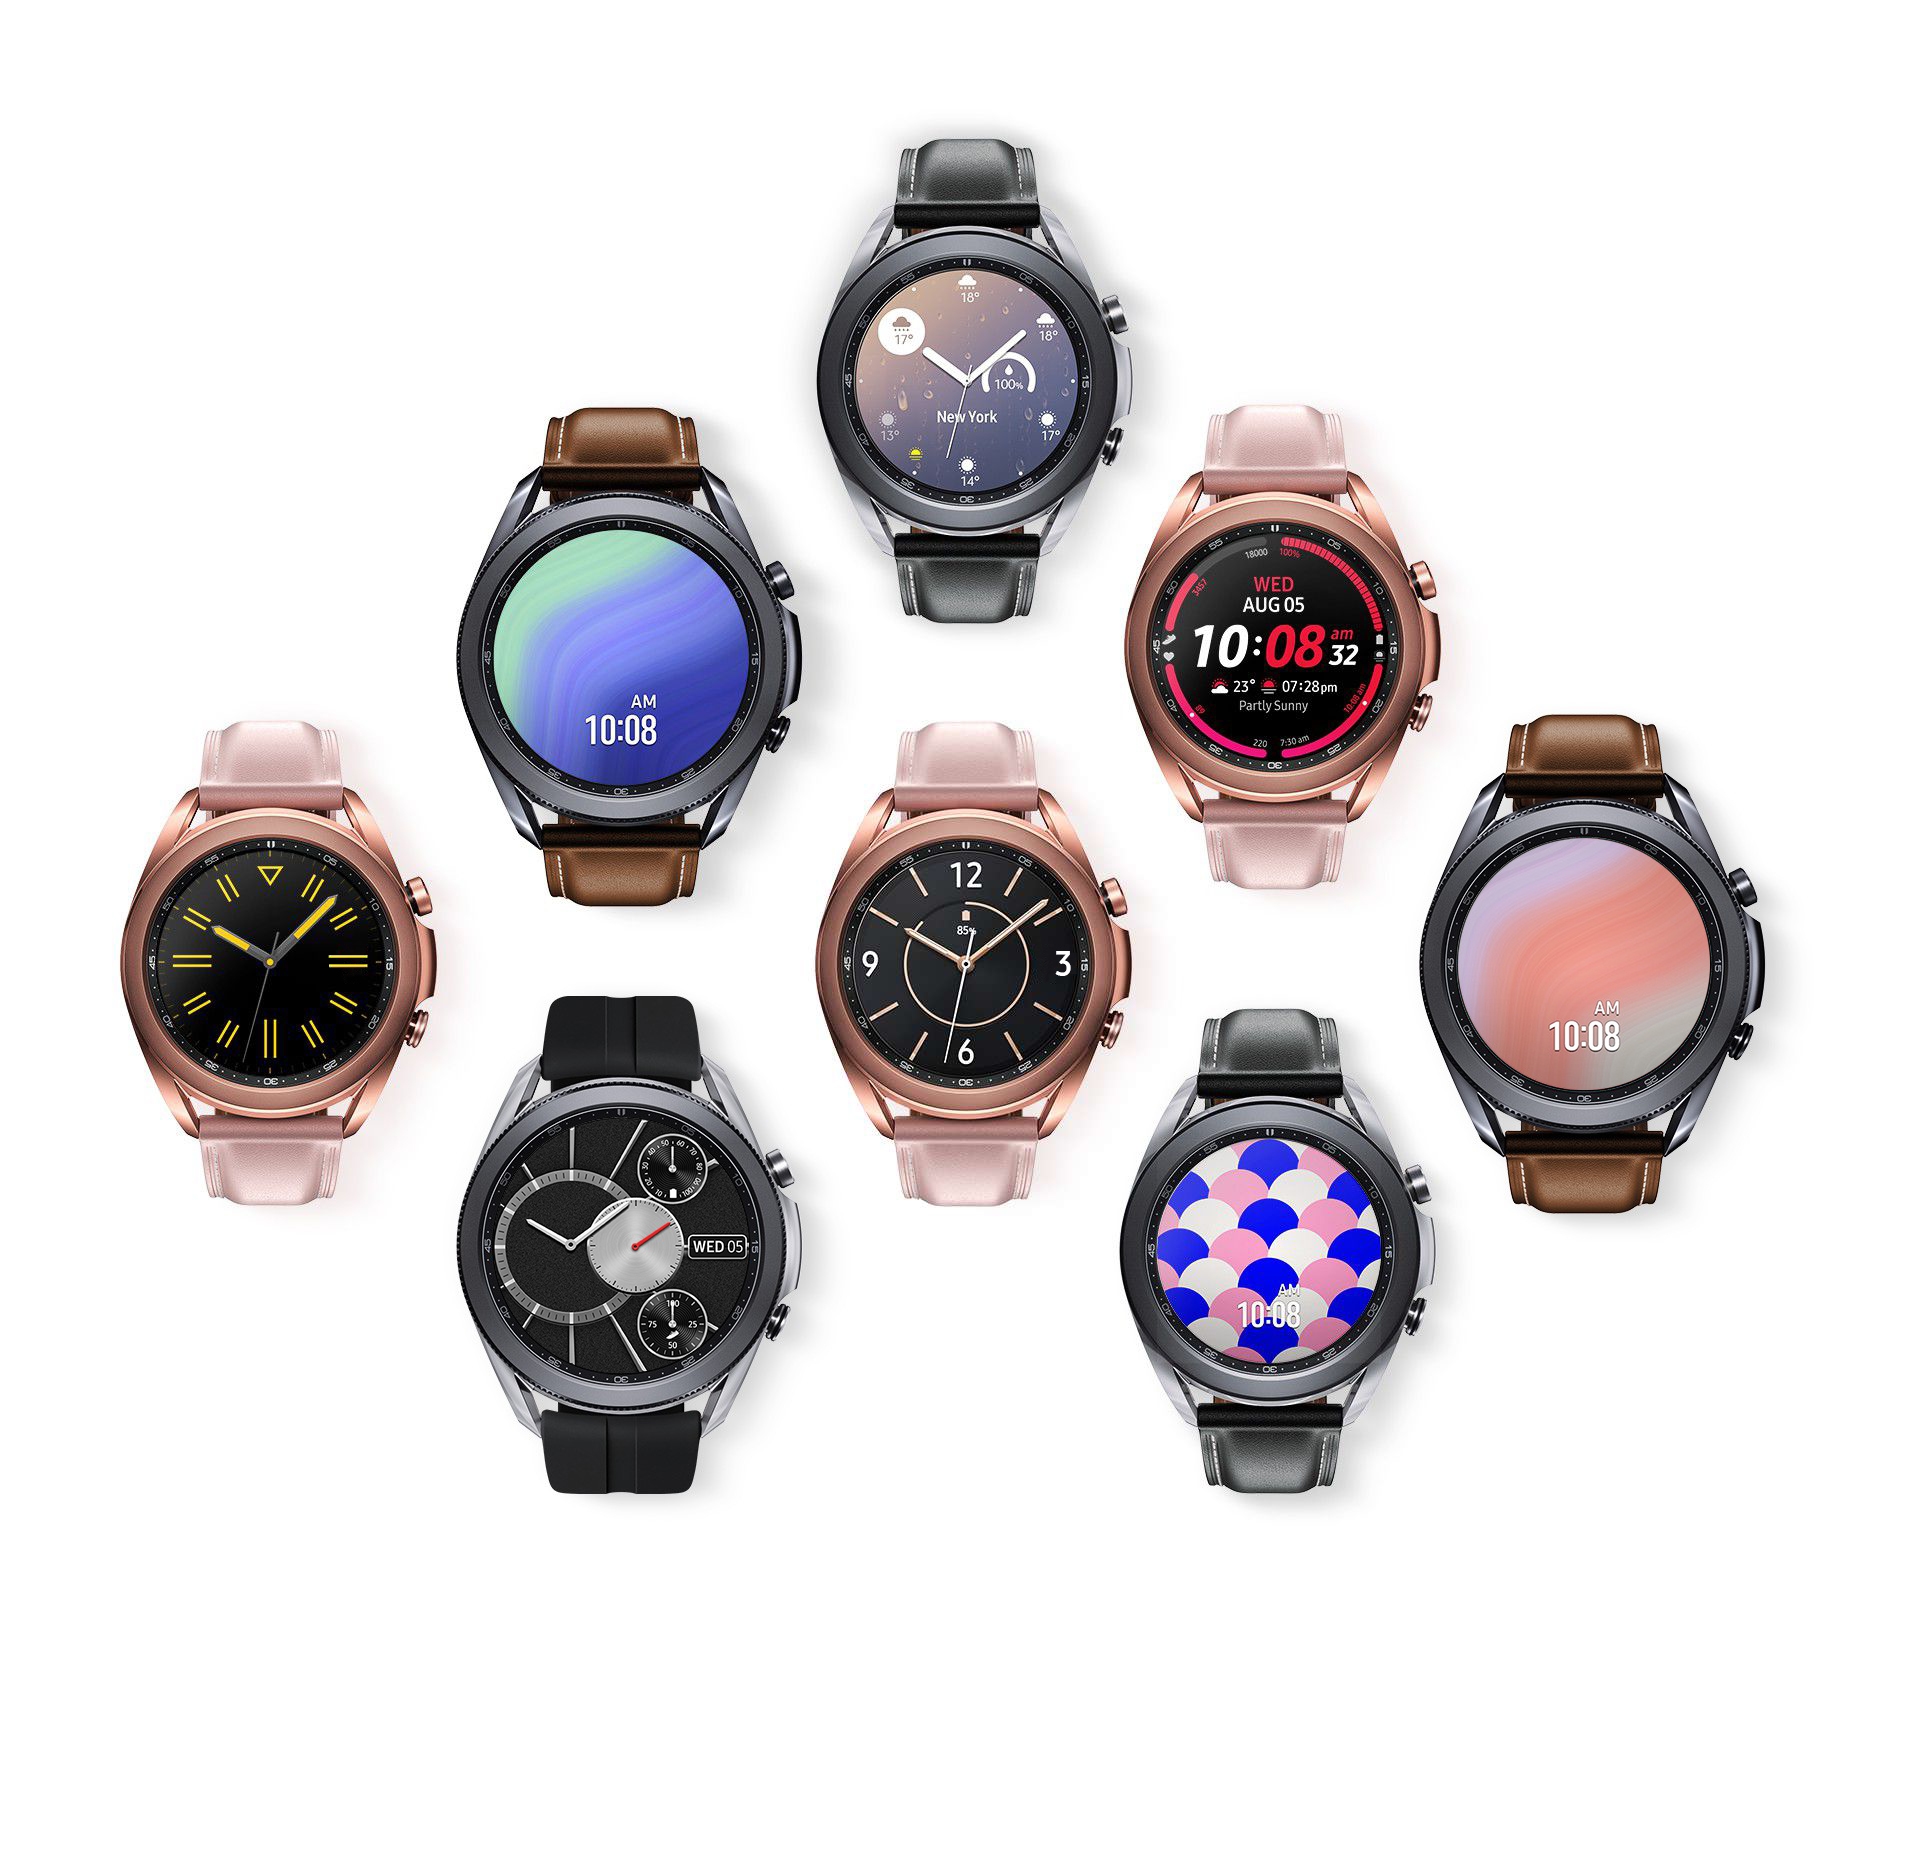 Samsung Galaxy Watch3 LTE Smartwatch